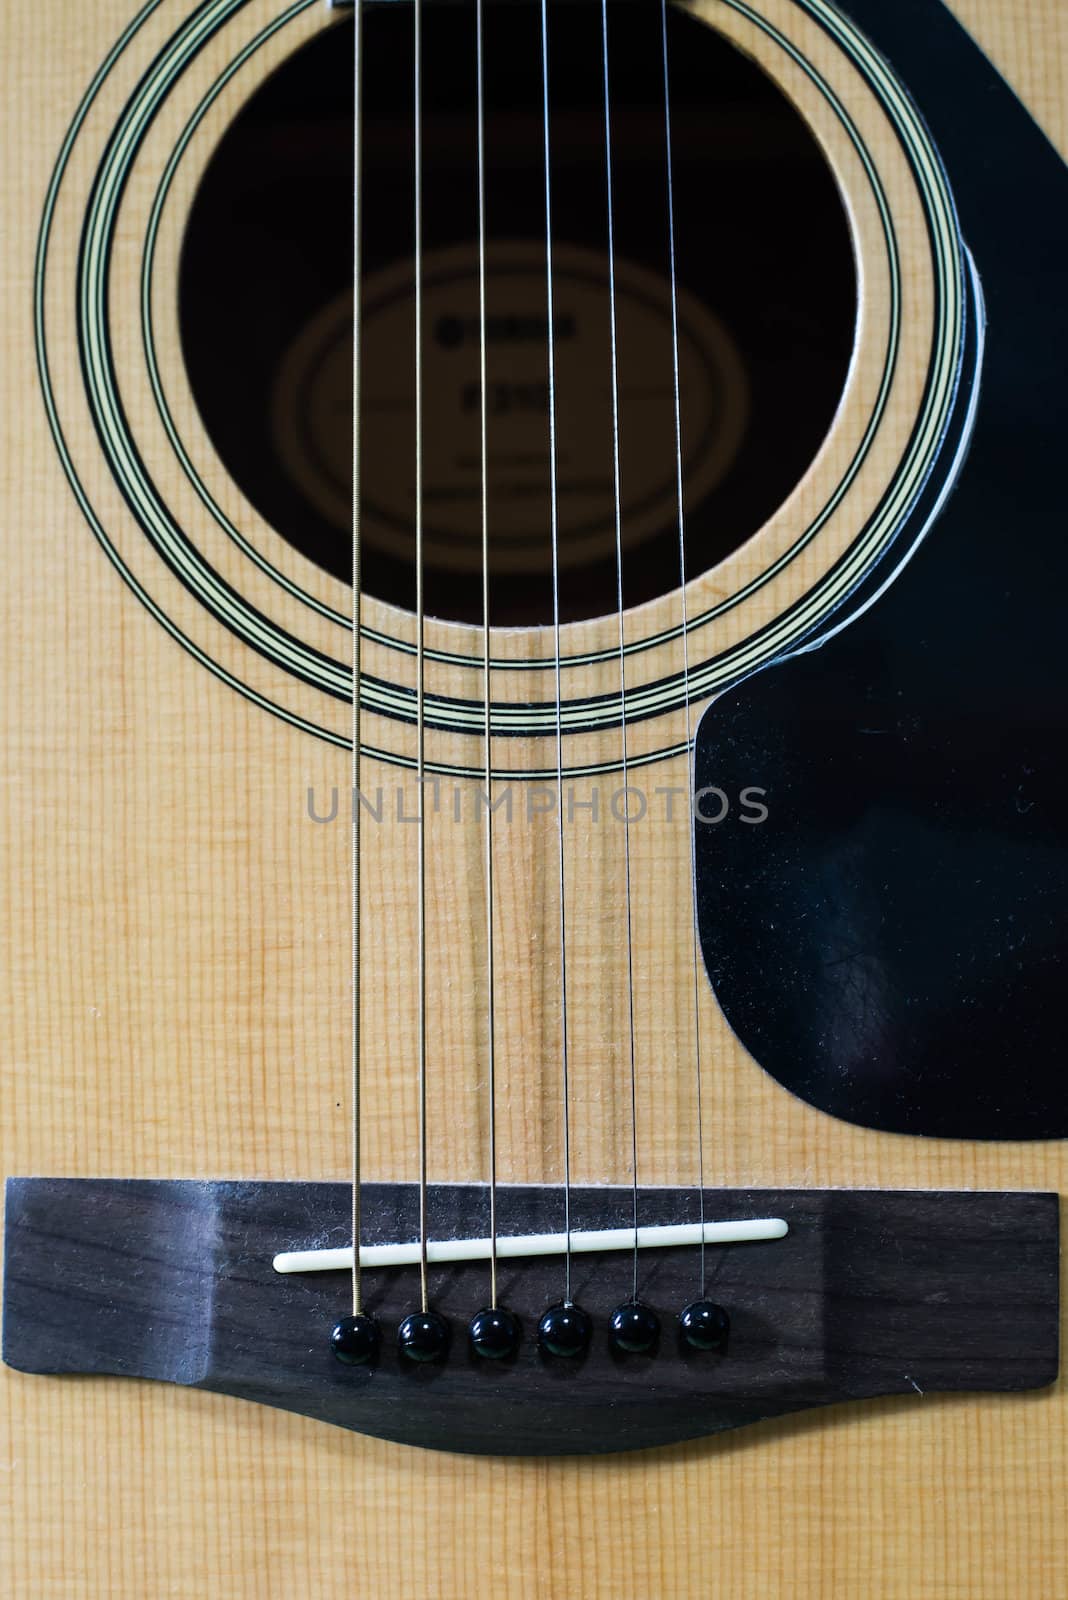 Acoustic brown guitar.Zoom in the acoustic guitar strings.